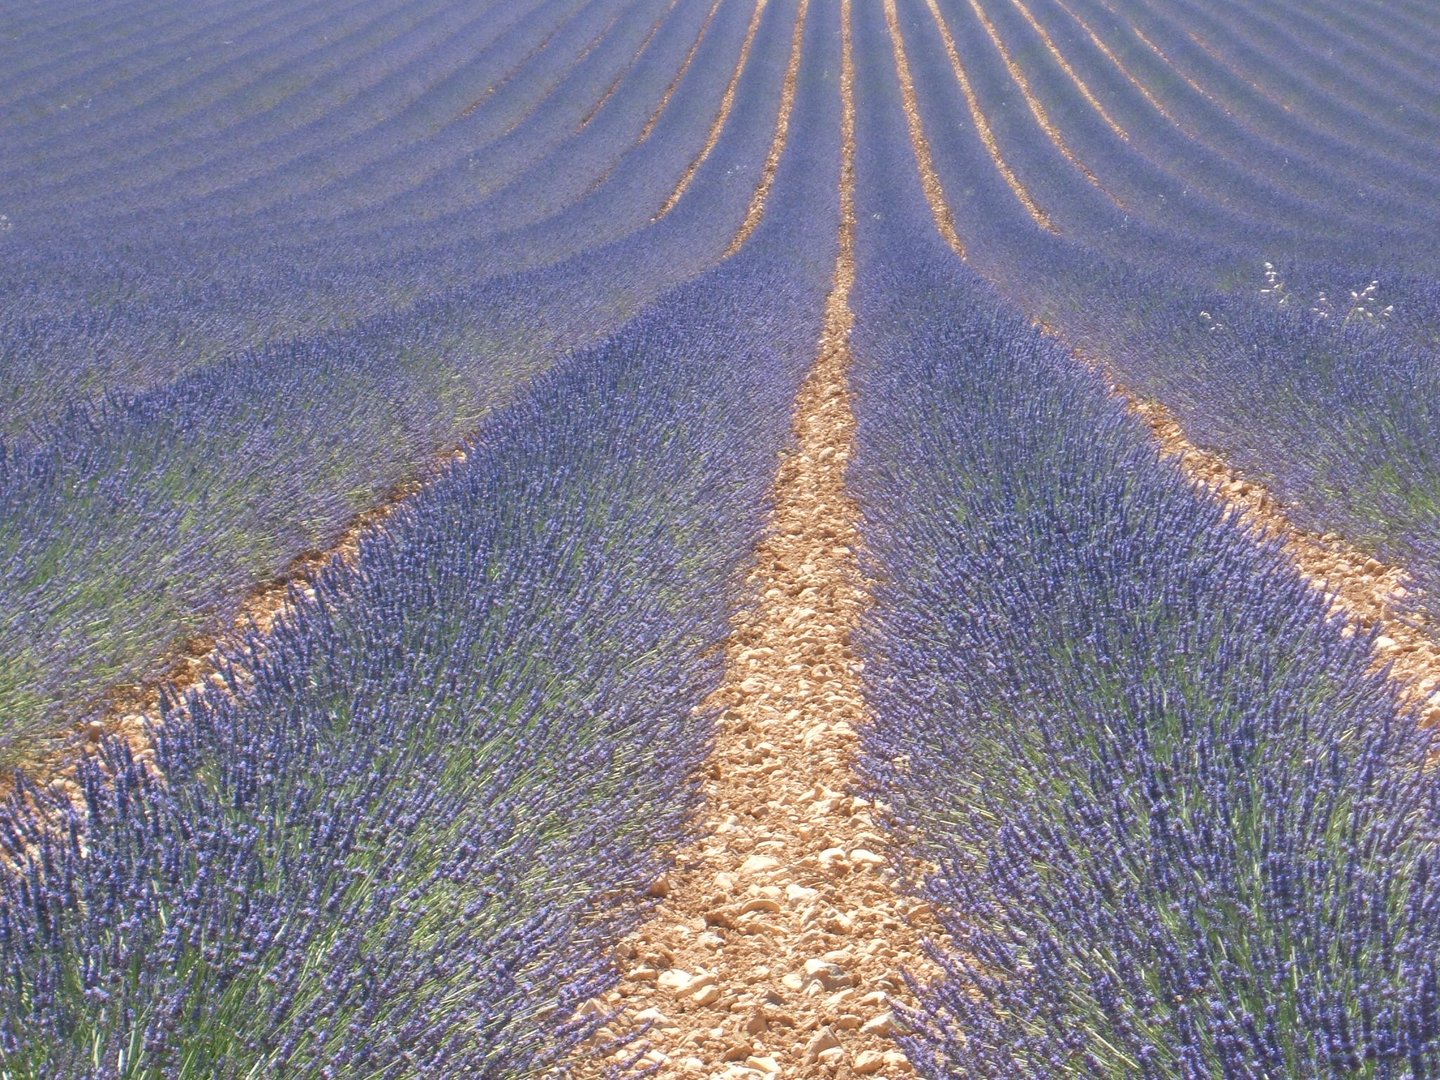 Lavendelfeld in der Provence